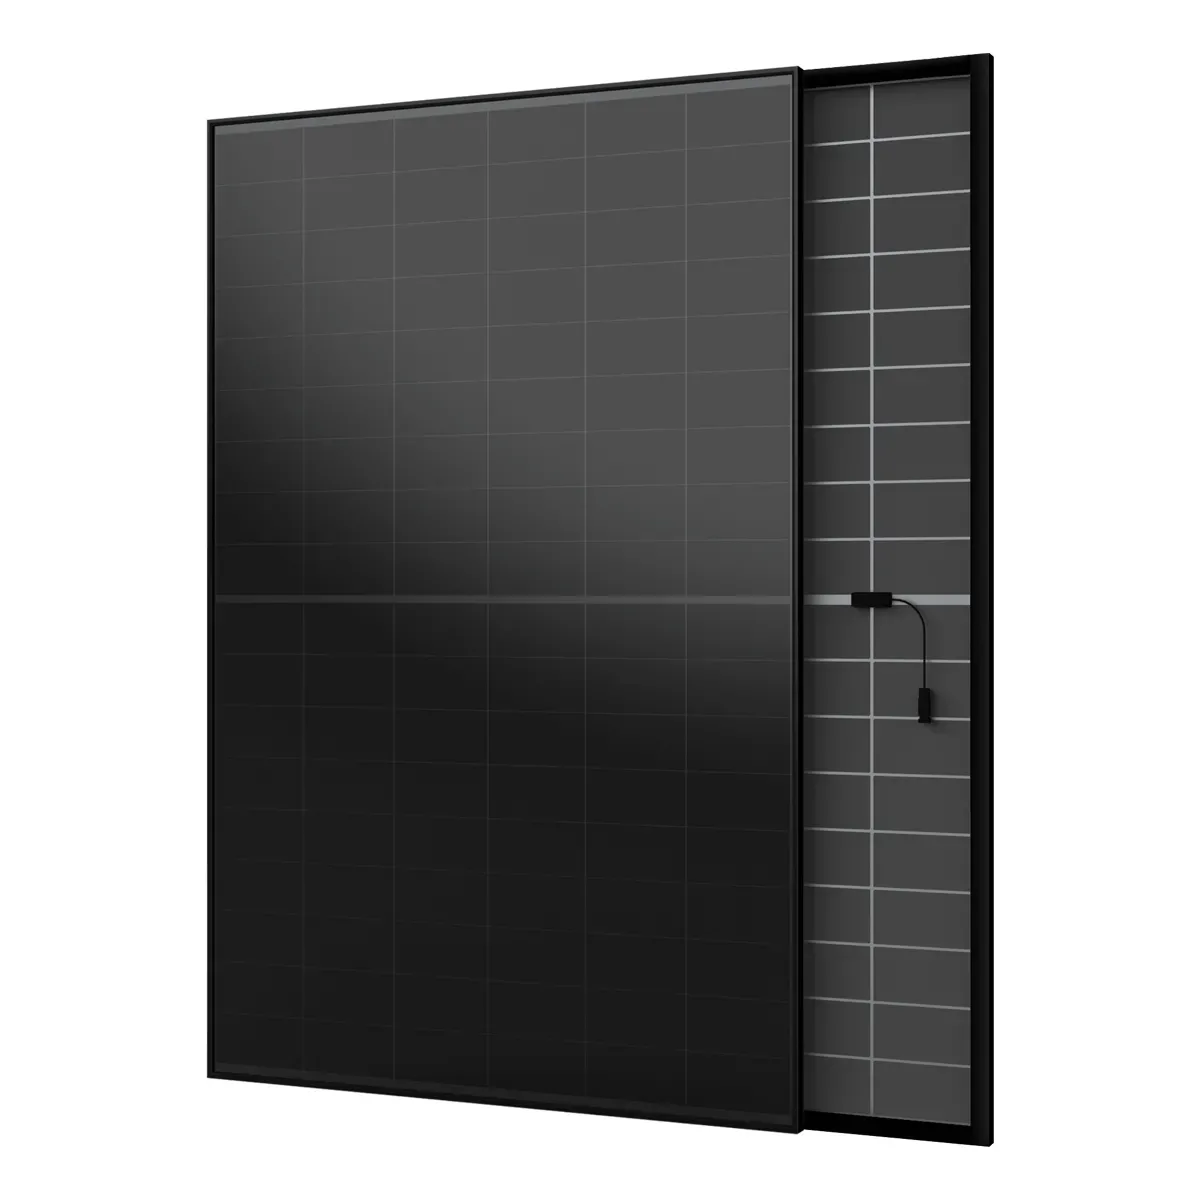 Solárny panel monokryštalický AIKO 450Wp Neostar 2S+ celočierny double-glass